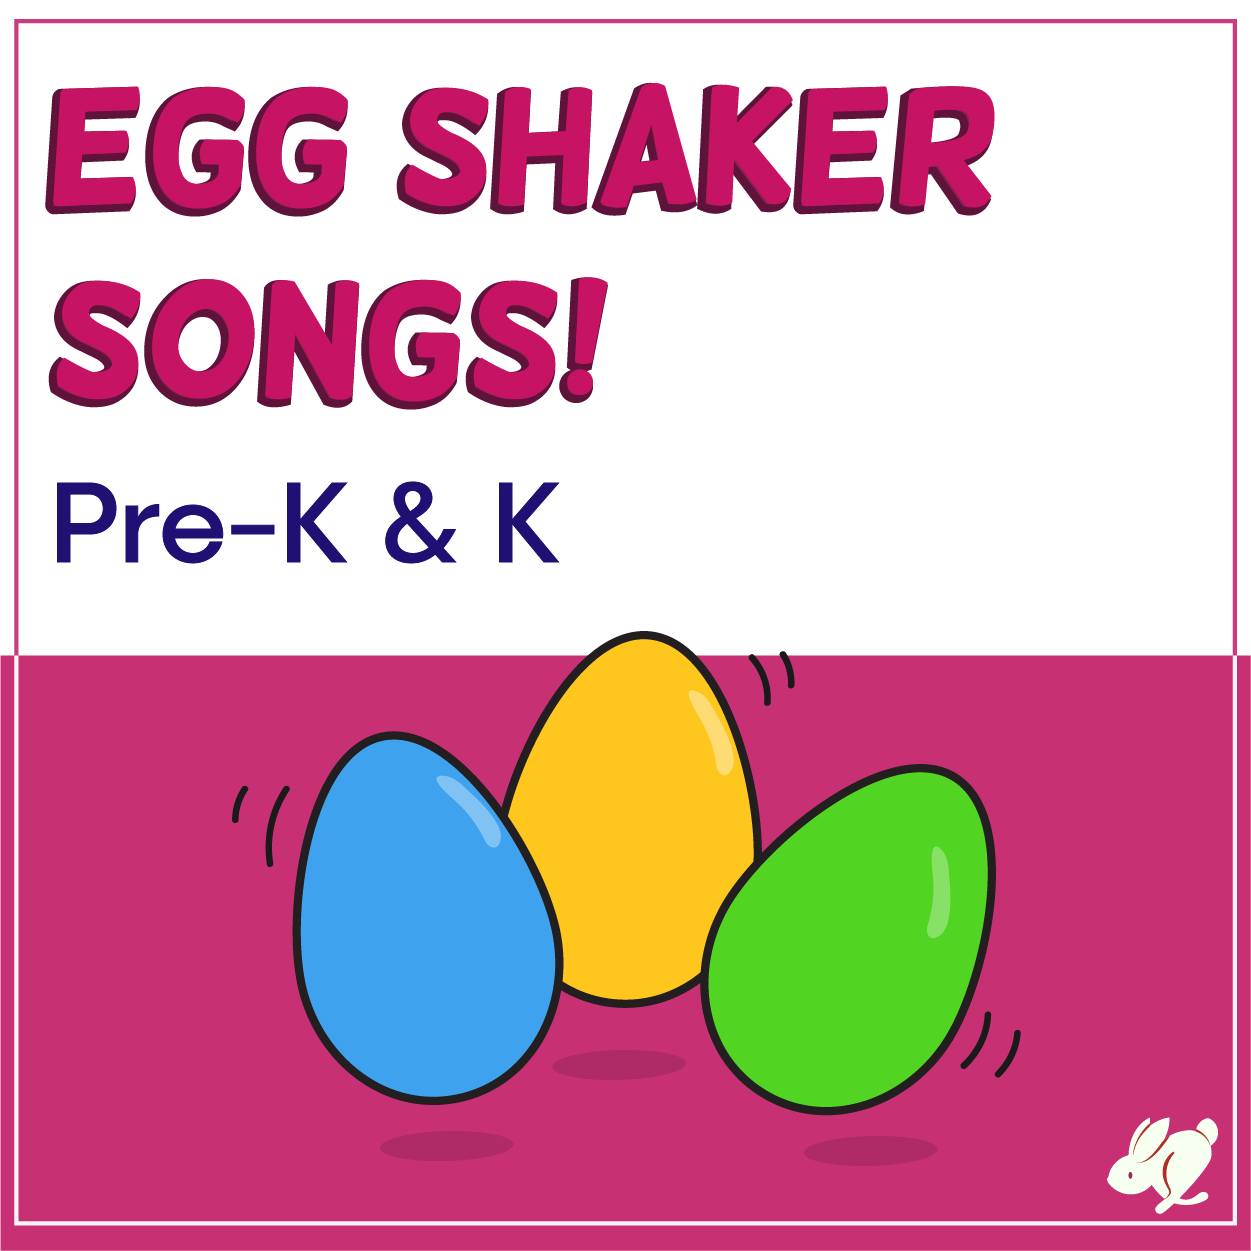 Shaker Egg Activities that Preschool and Kindergarten Love